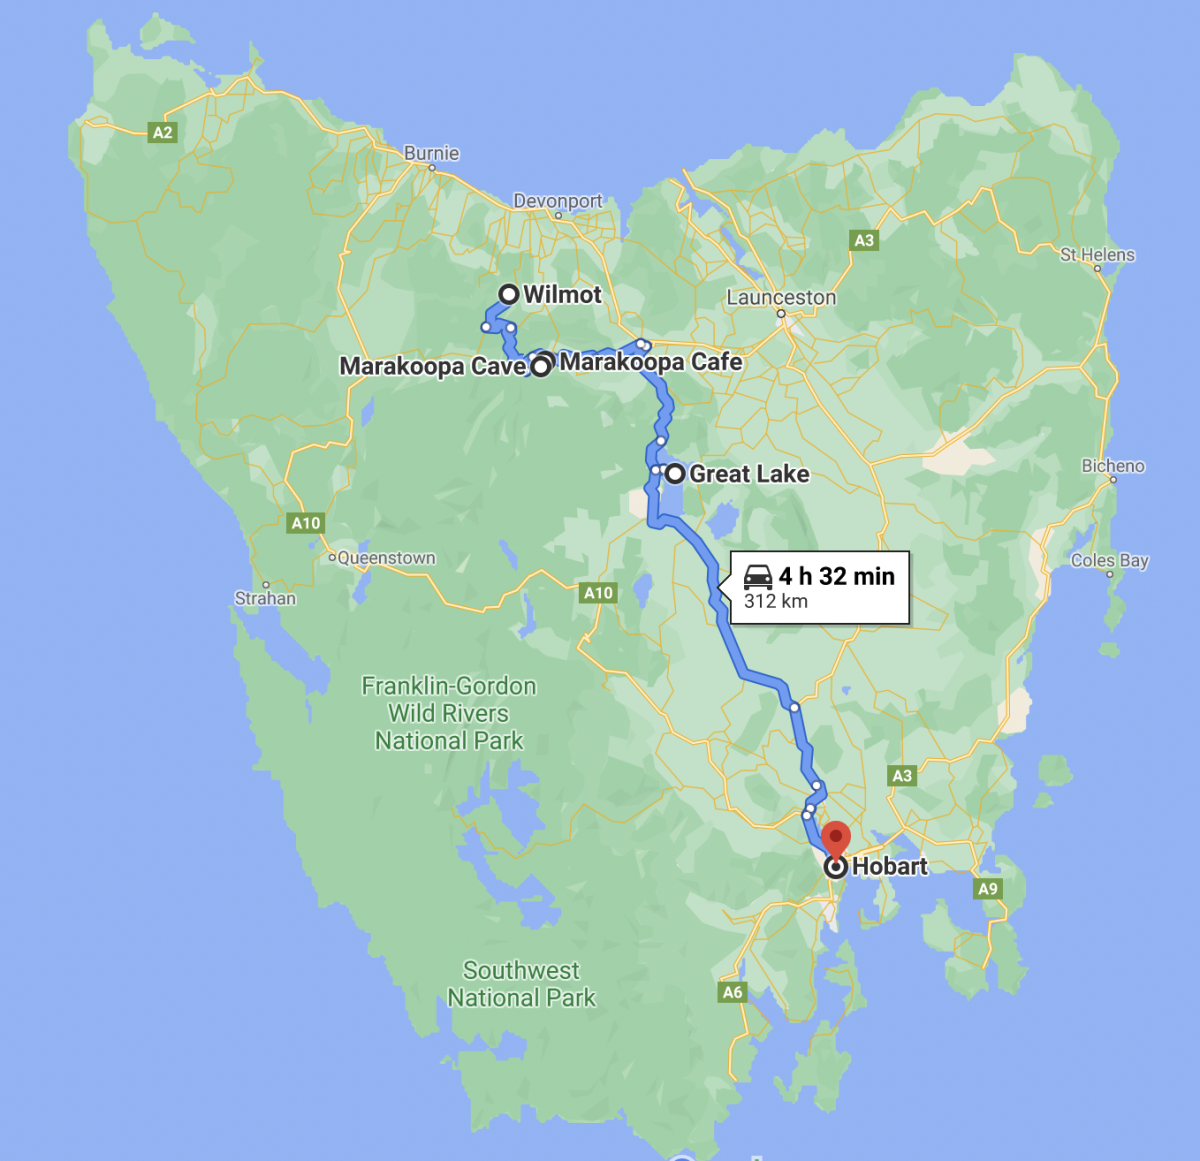 Den 6: trasa z WIlmotu přes Mole Creek s jeskyní, kolem Great Lake a zpět na jih do Hobartu